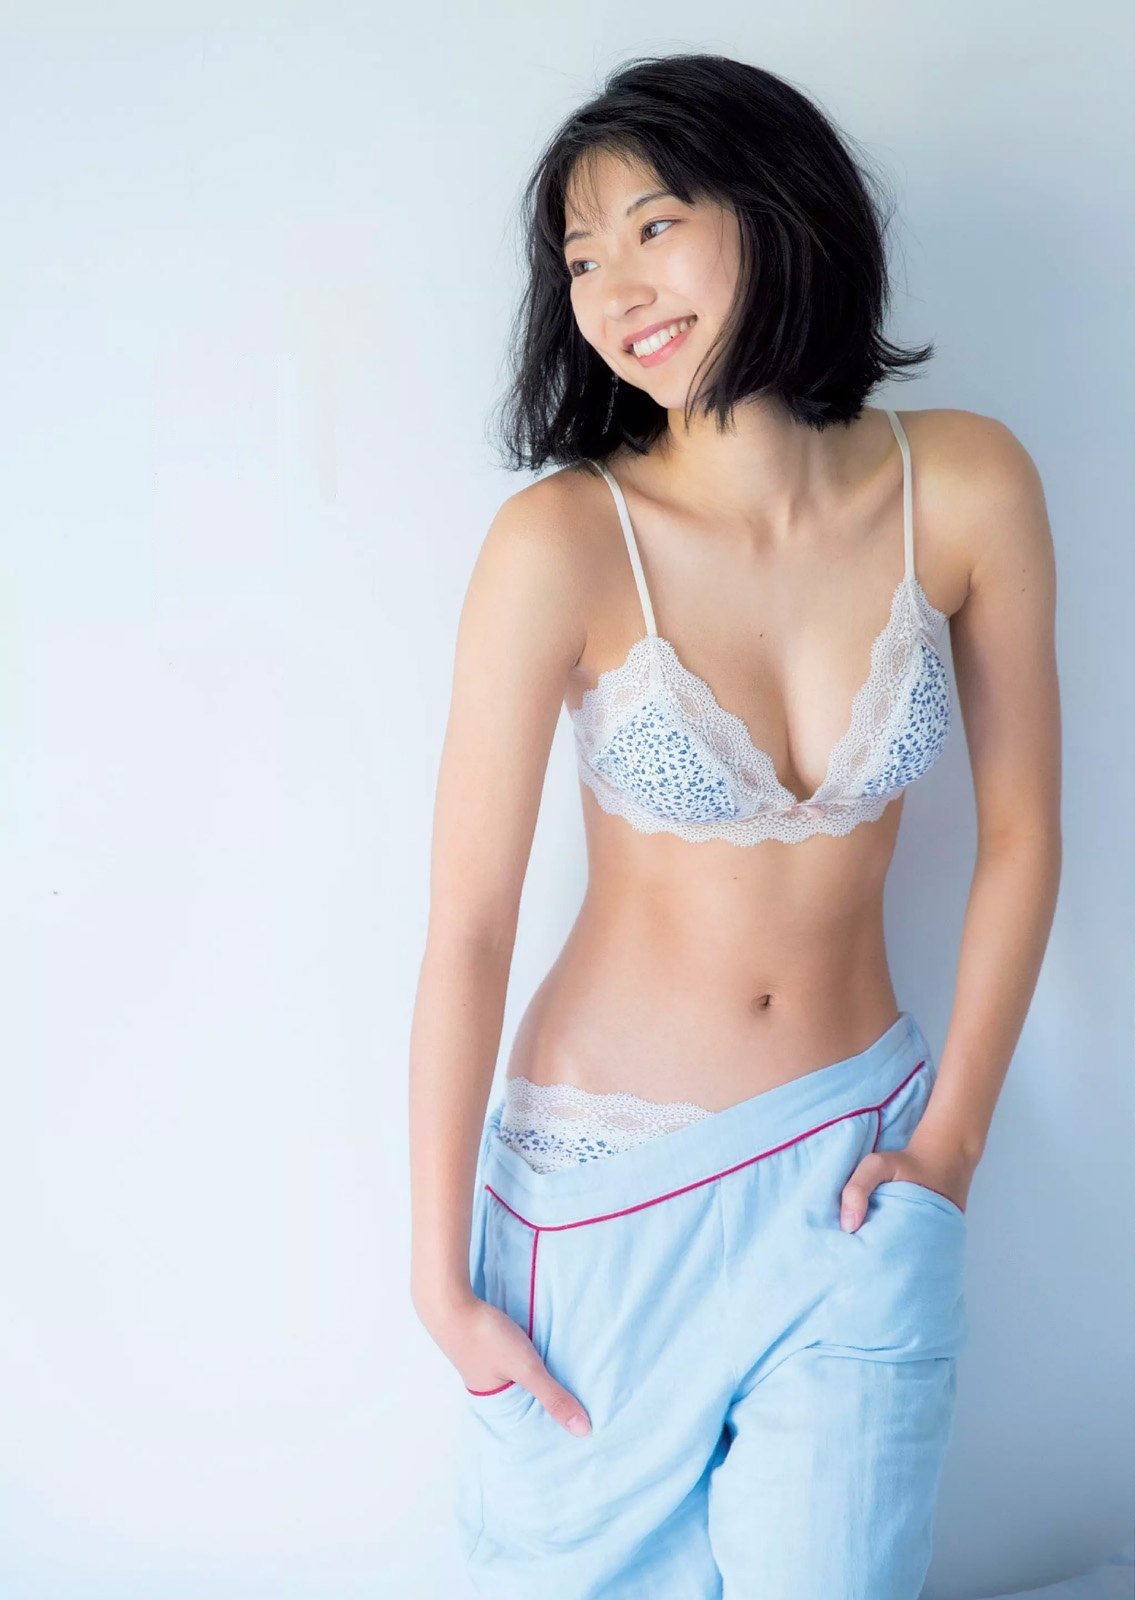 華奢なボディで猫っぽい顔の可愛い女優、武田玲奈 (20)